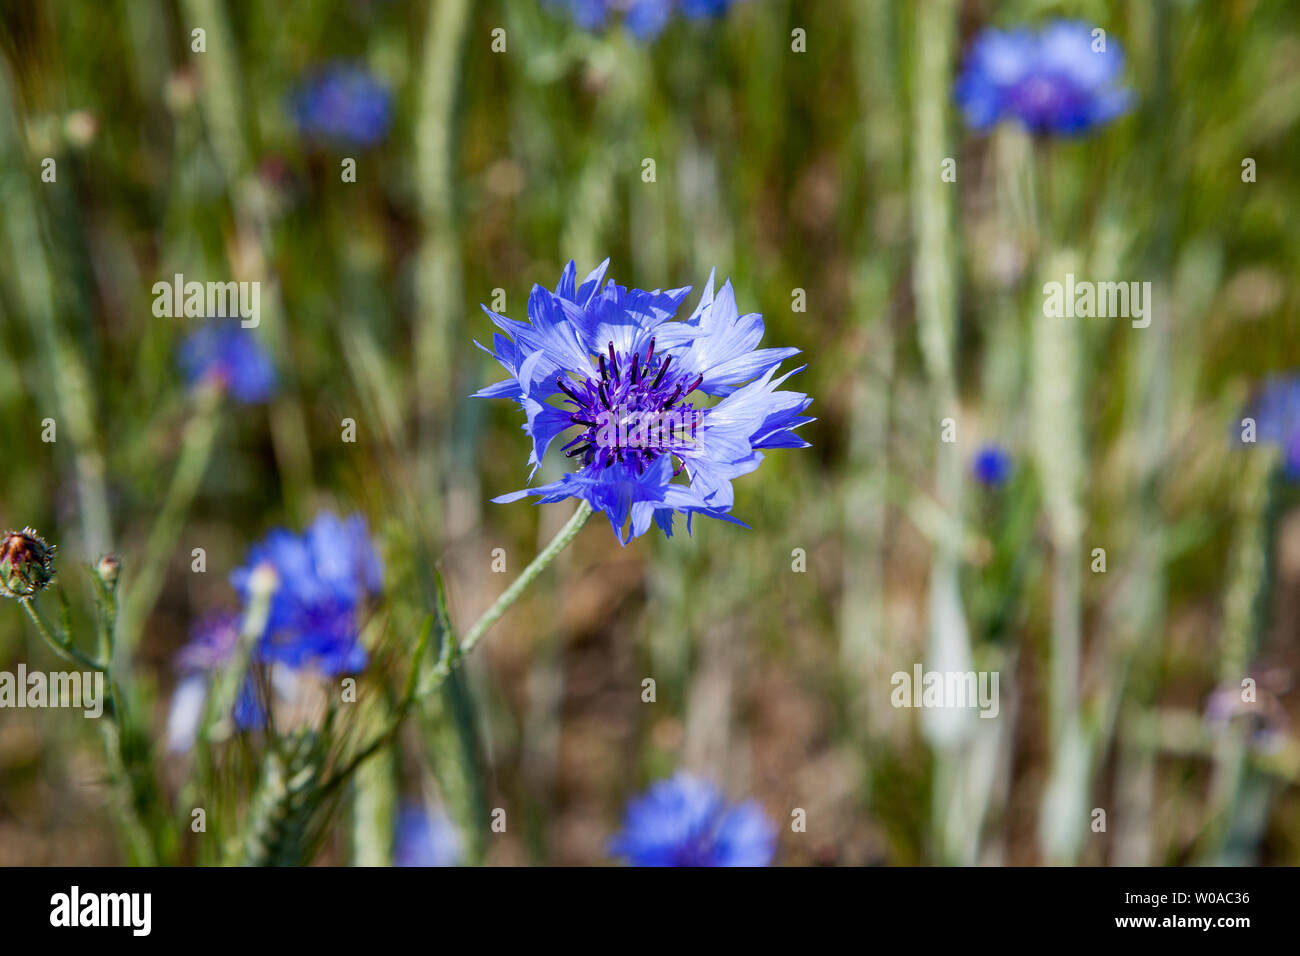 CENTAURED CYANUS fiordaliso cresciuto come infestante in cornfield è anche fiore nazionale dell'Estonia Foto Stock